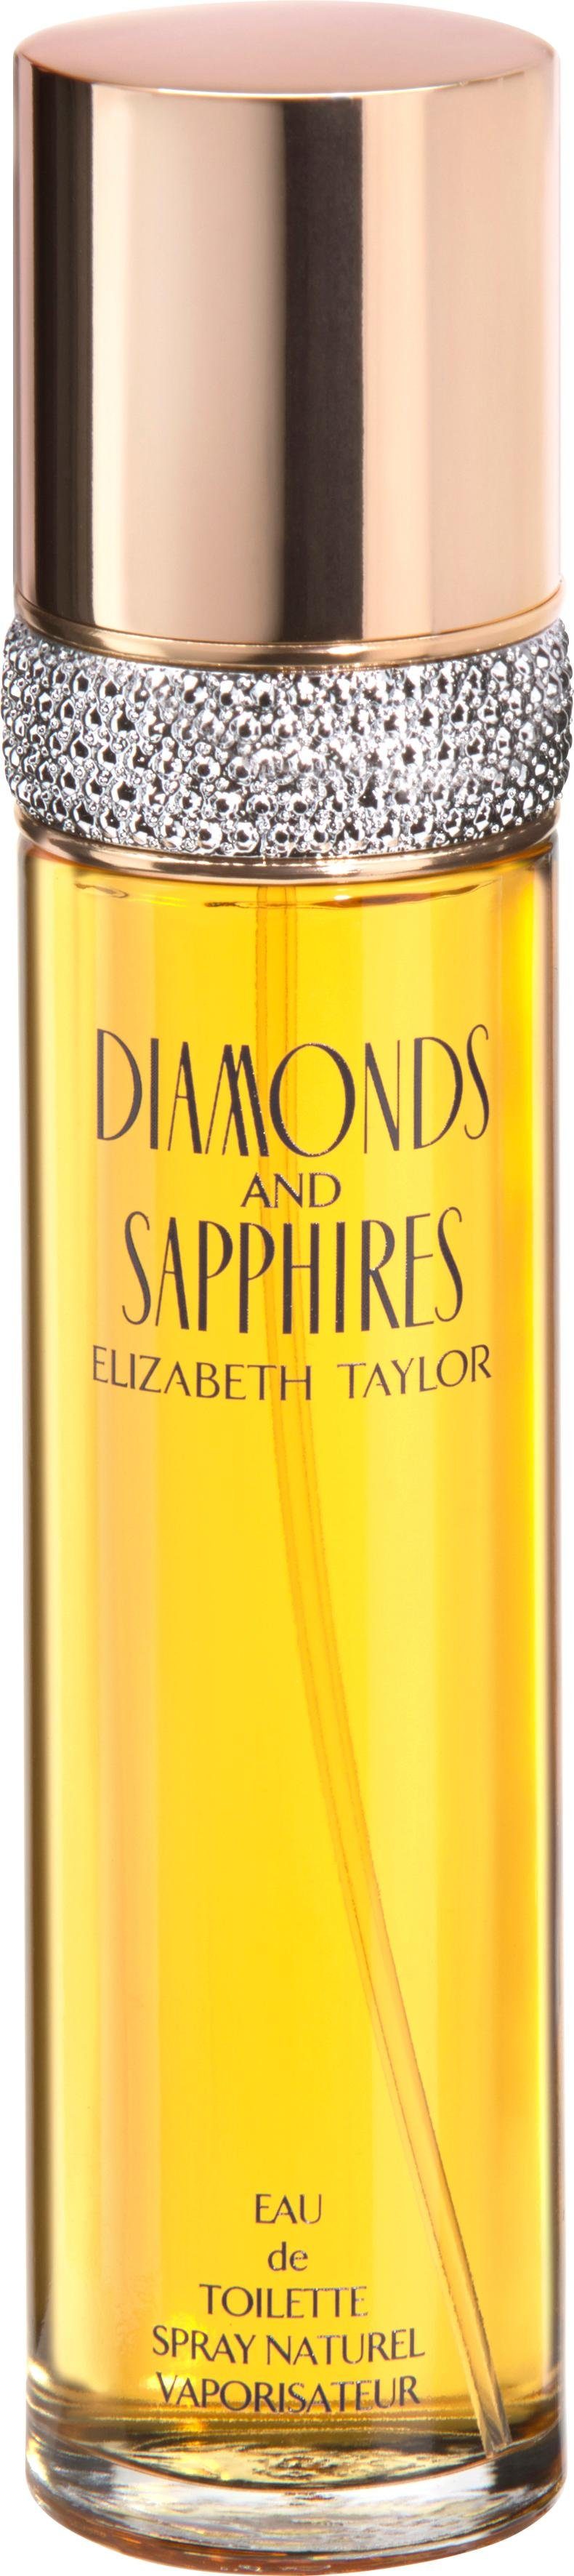 Elizabeth Taylor Eau de Toilette Sapphires & Diamonds